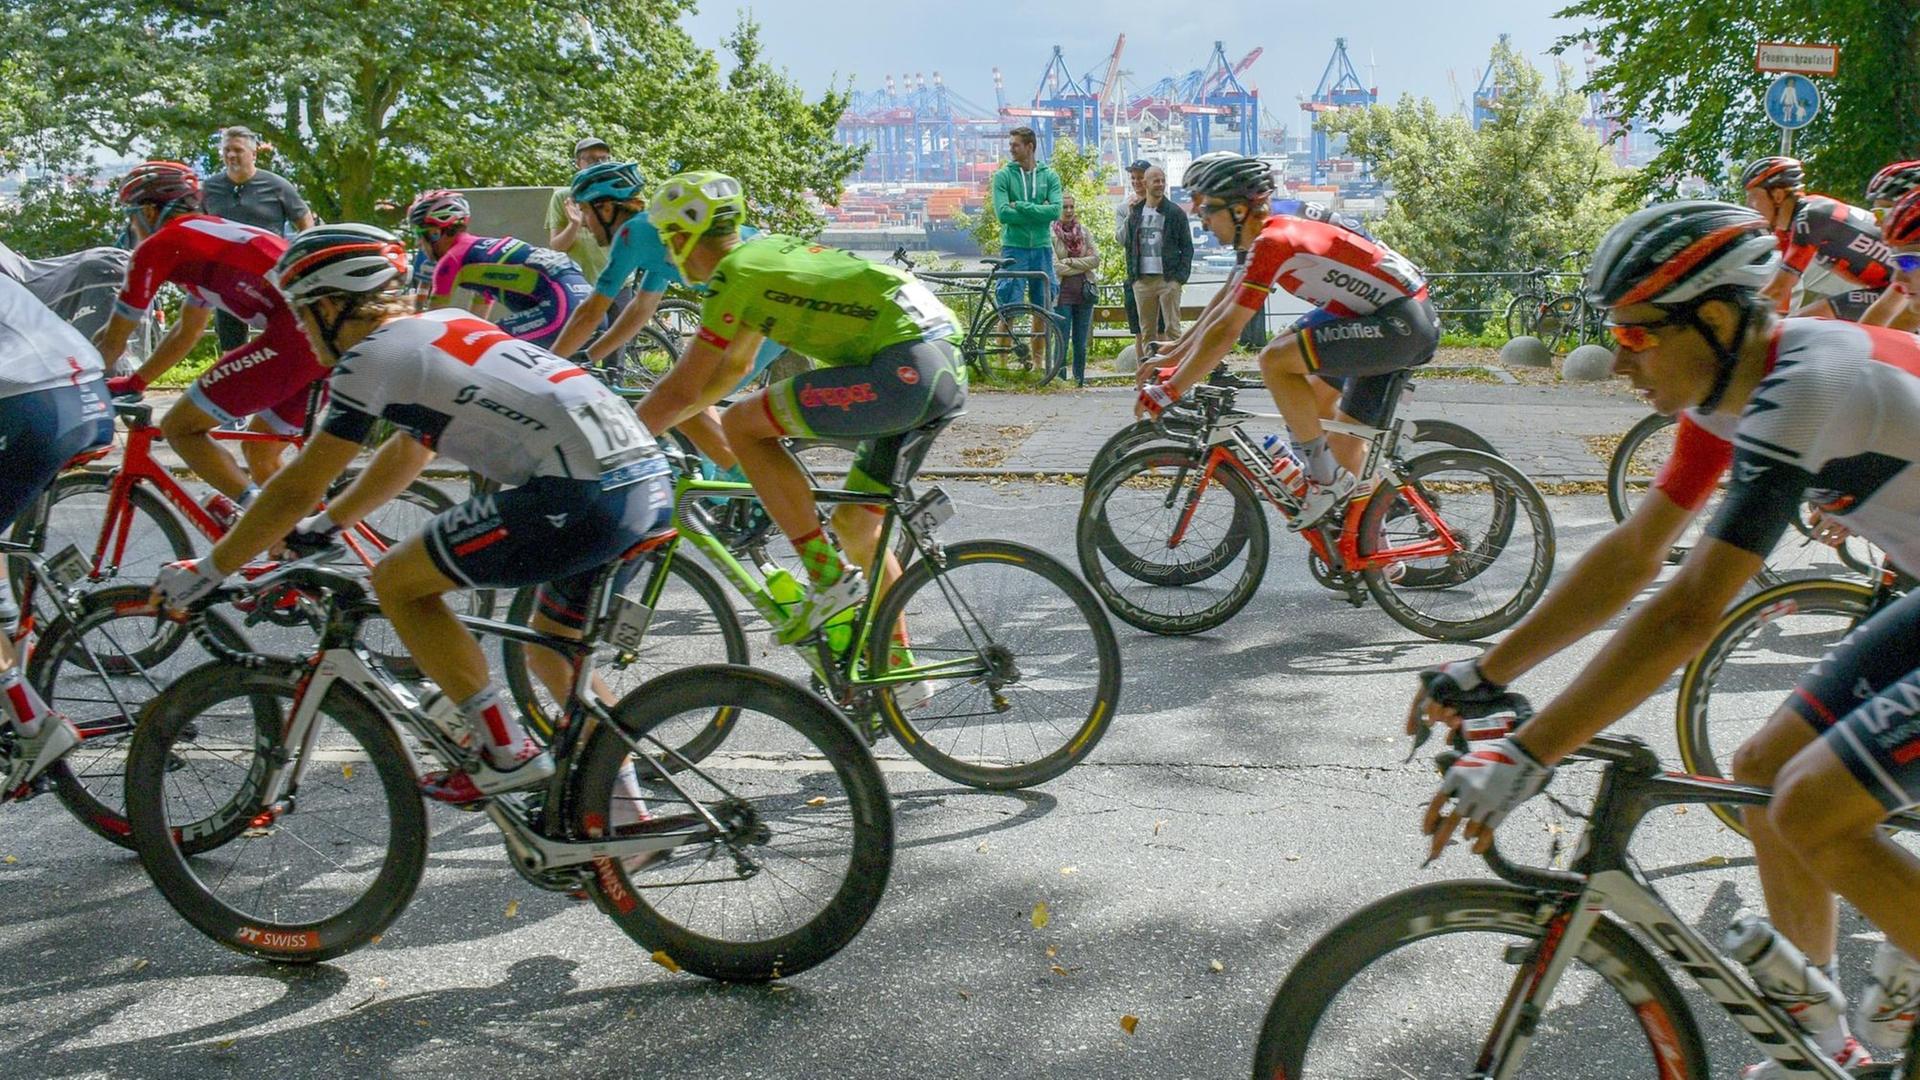 Cyclassics-Radrennen 2016: Das Feld der Profi-Fahrer fährt durch den Hamburger Stadtteil Blankenese.